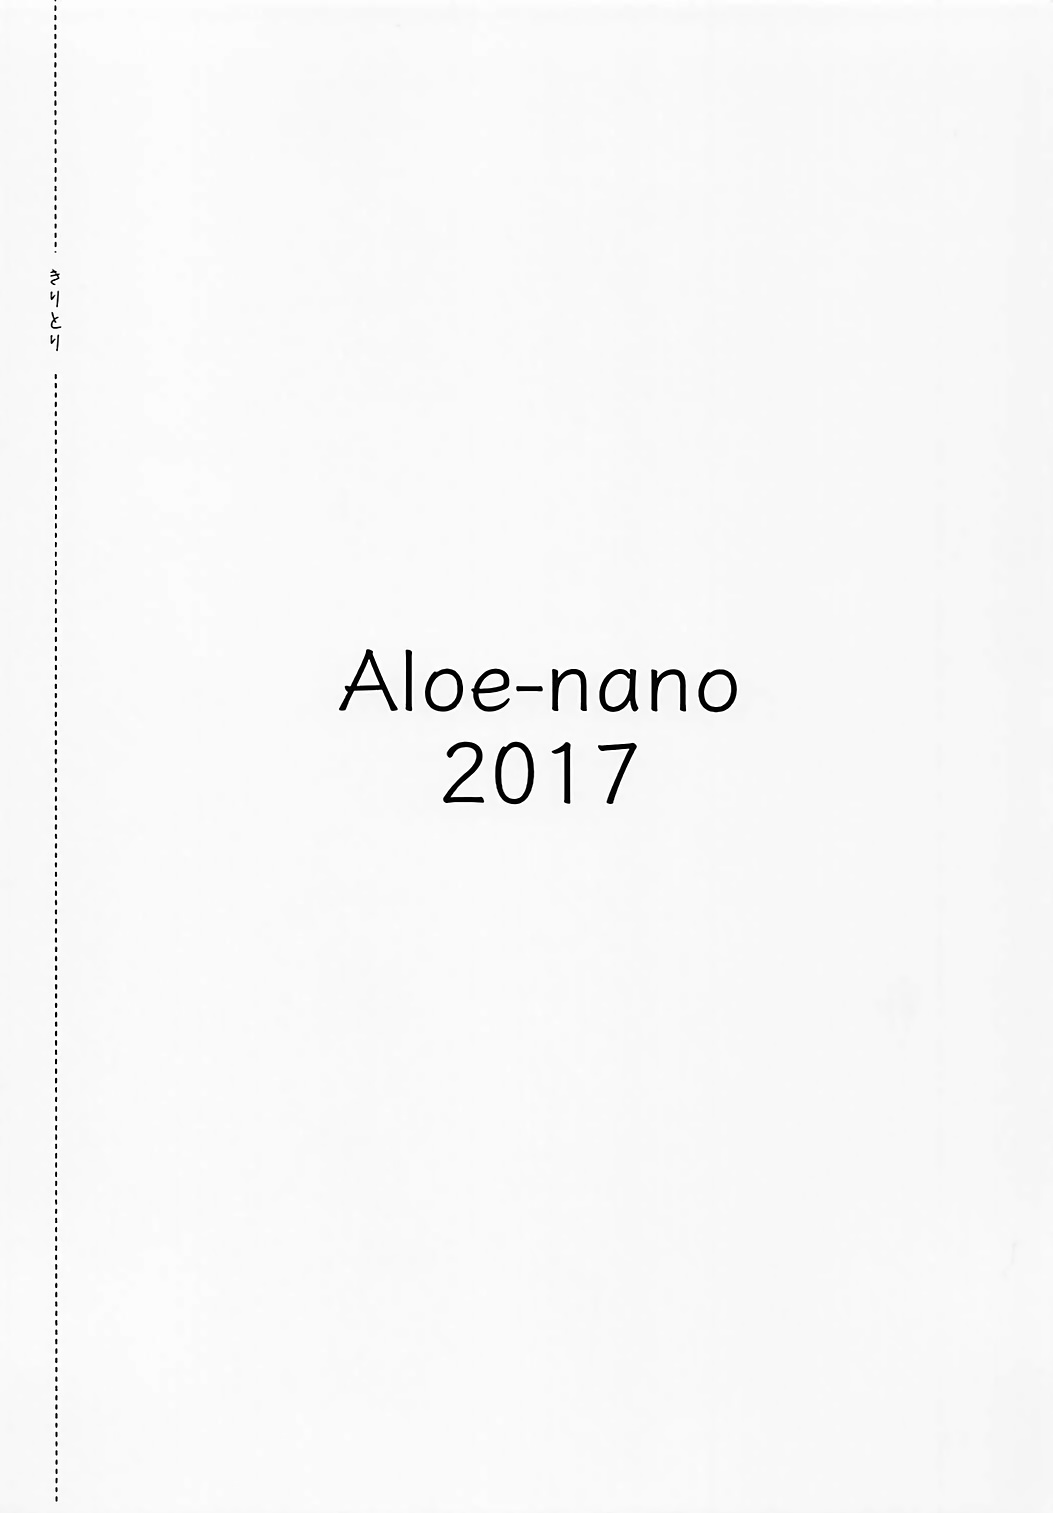 (僕らのラブライブ! 16) [Aloe-nano (なのつき)] コスプレ曜日(2) (ラブライブ!サンシャイン!!)